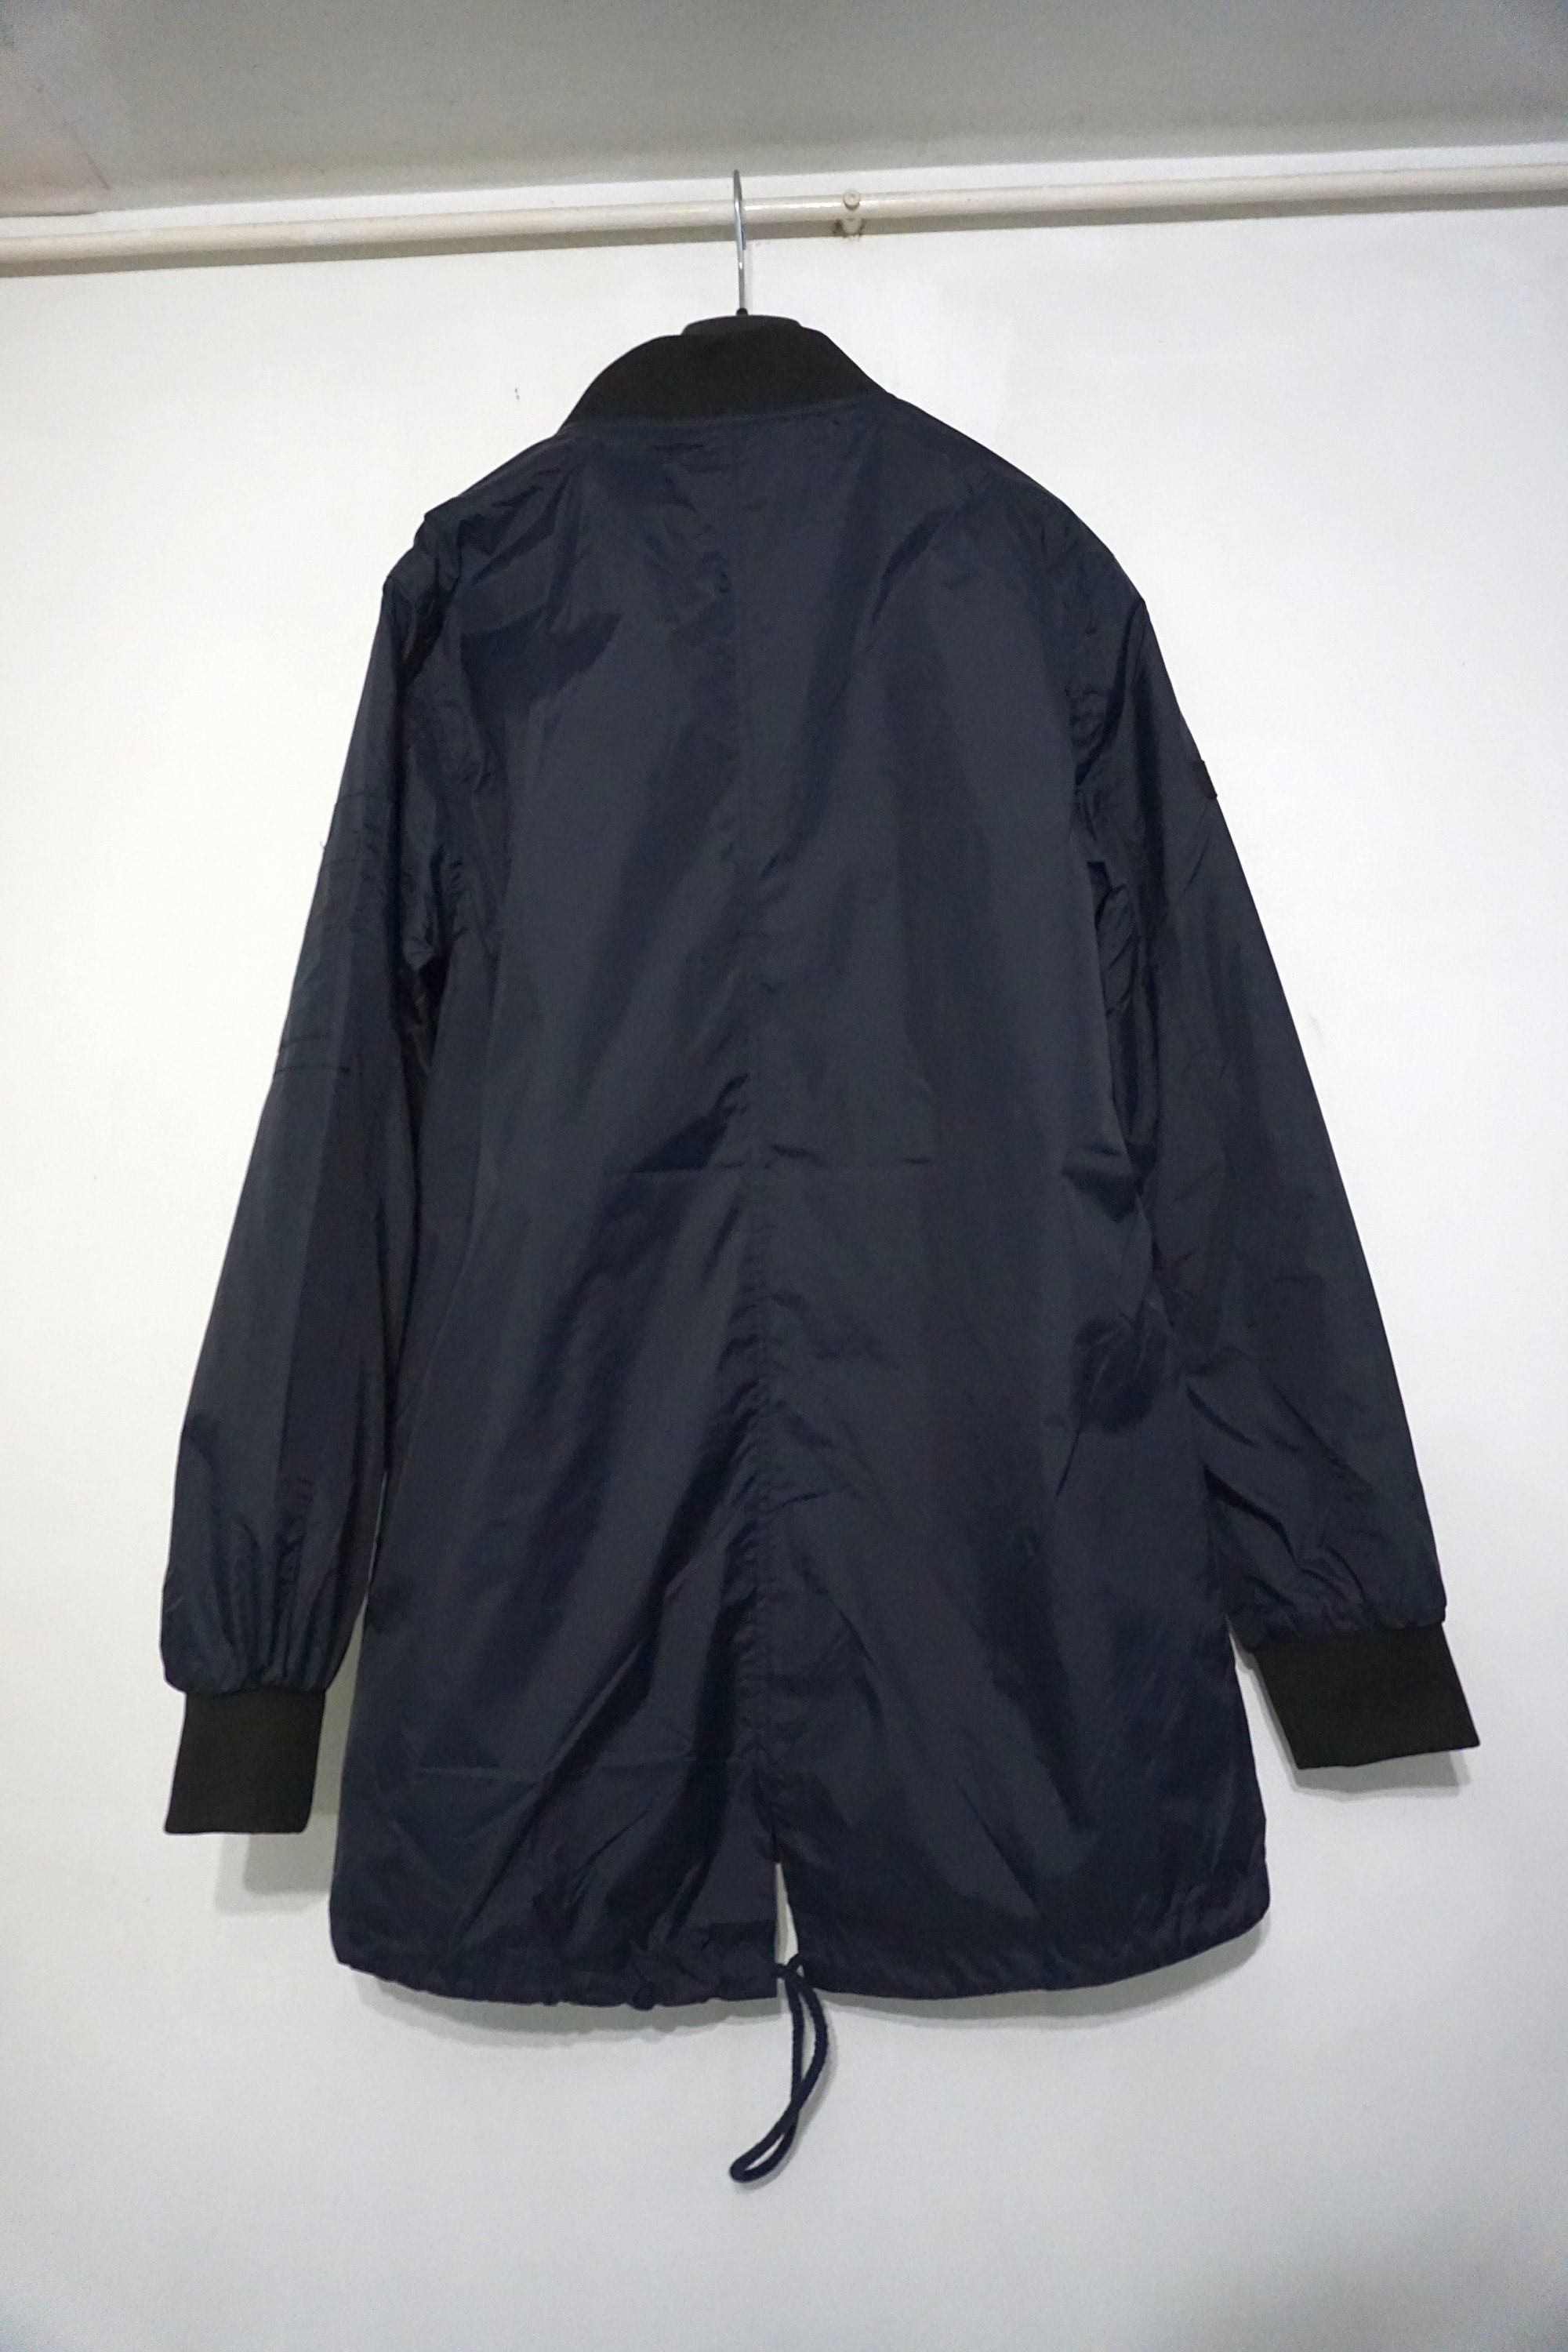 Sewing Pattern.men's Jacket Windbreak-rain. - Etsy UK